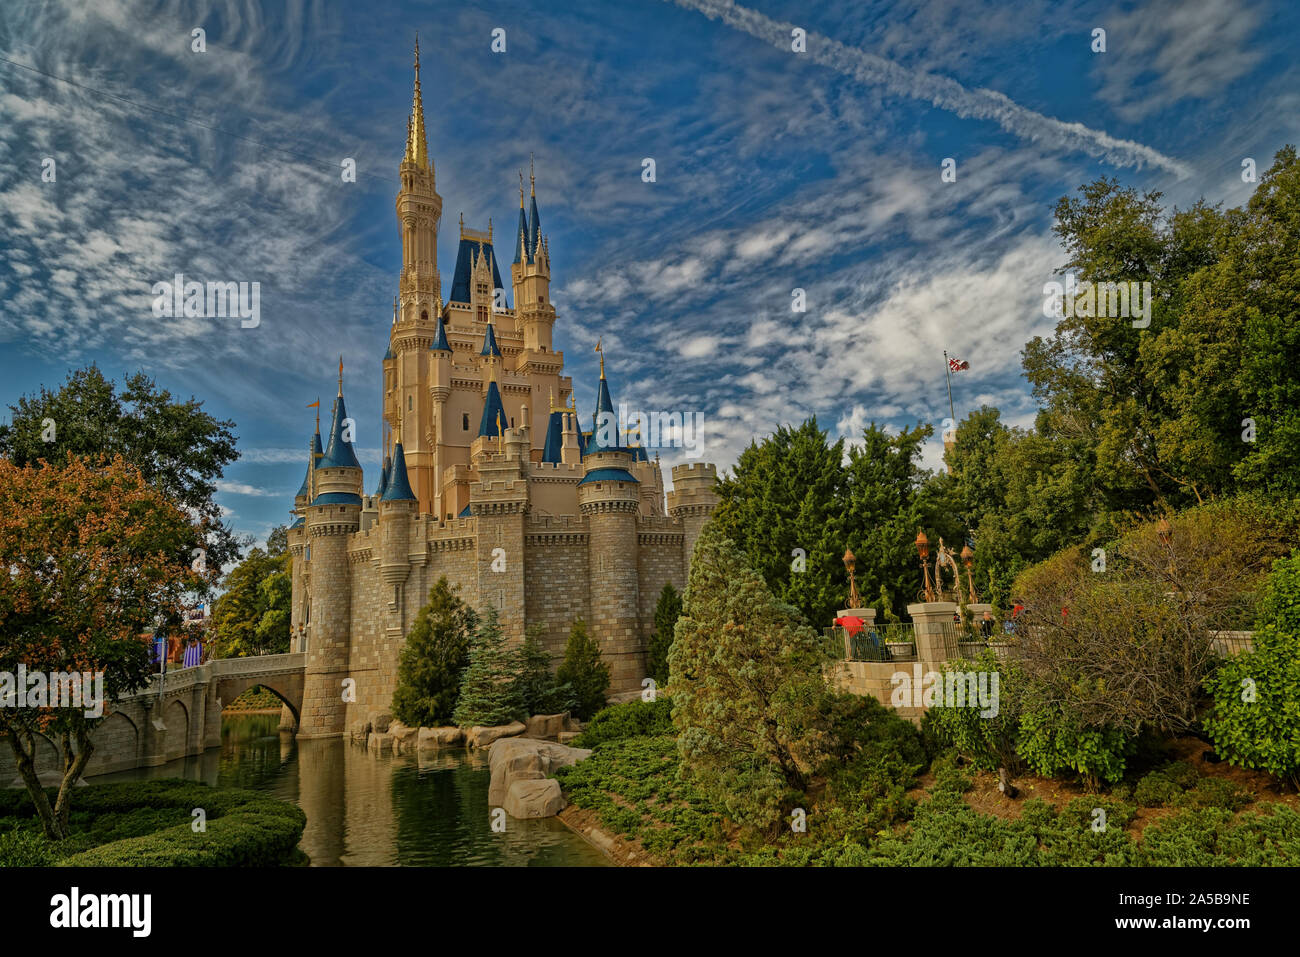 Le château de Cendrillon à Magic kingdom, Disney World, Orlando, Floride vue sur la lumière du jour avec des nuages dans le ciel en arrière-plan Banque D'Images